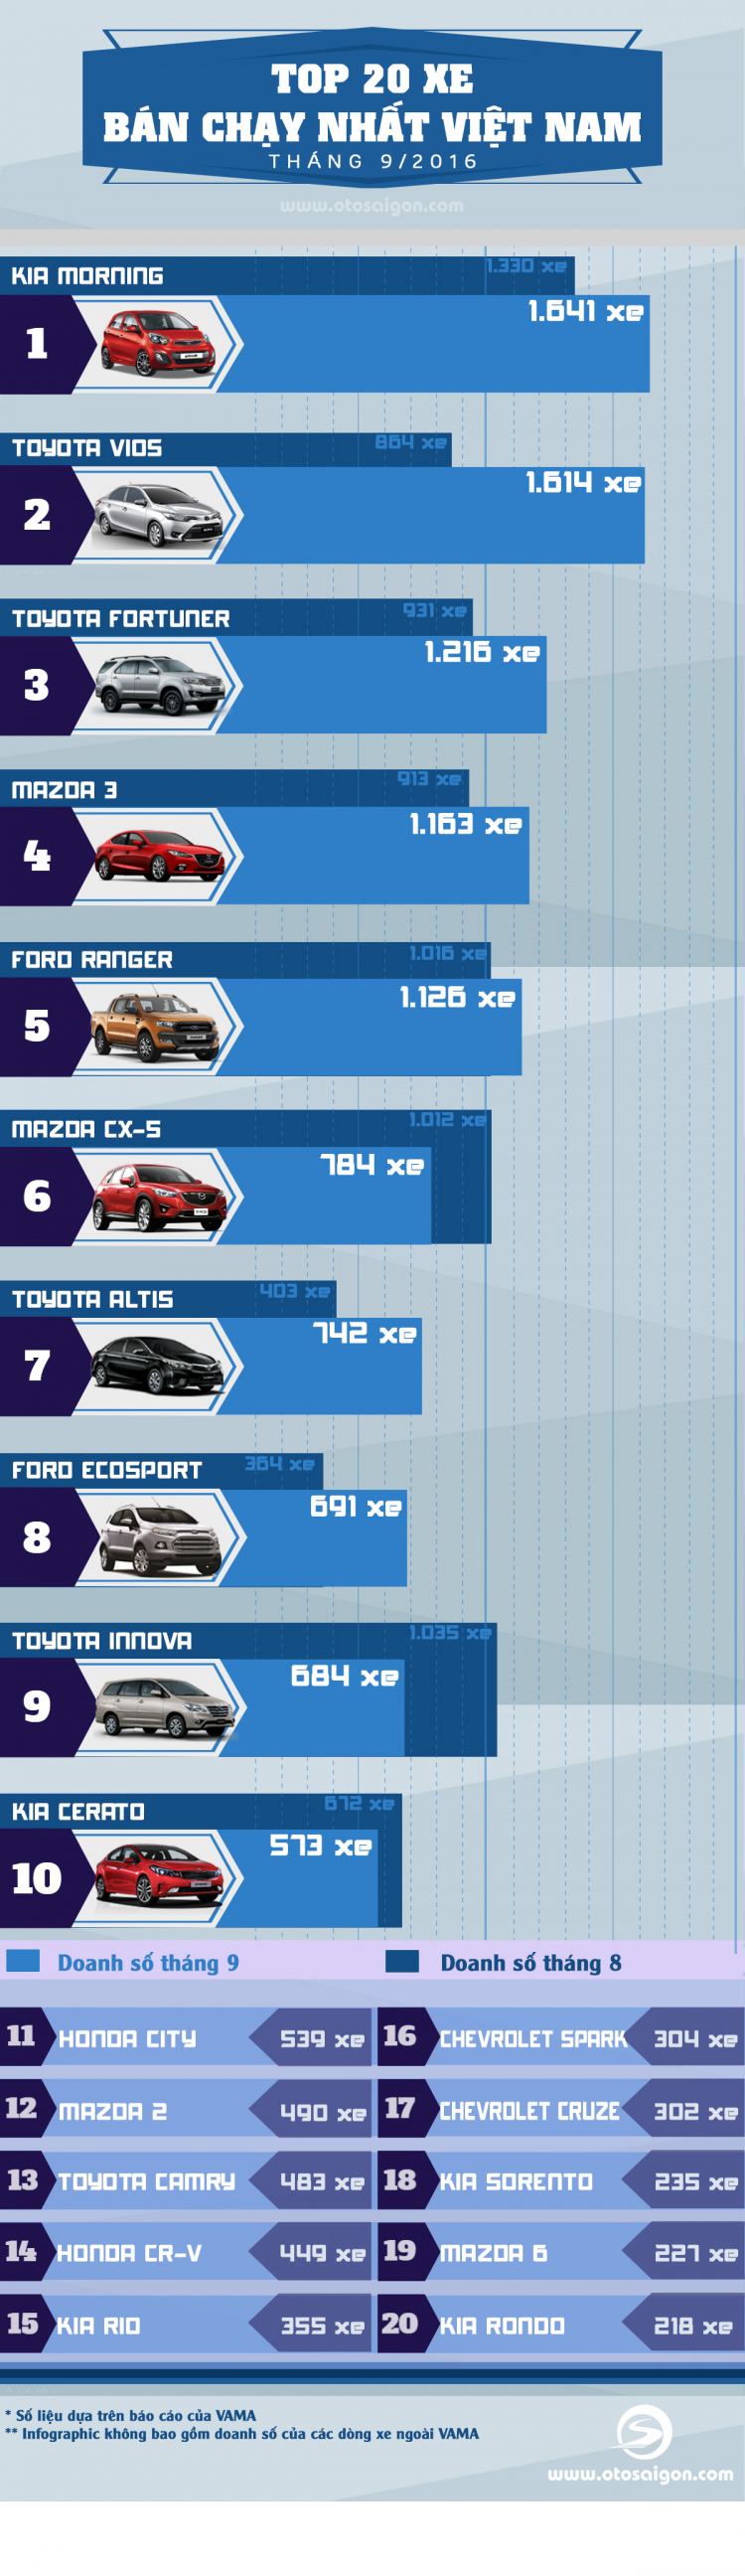 [Infographic] Top 20 xe bán chạy nhất Việt Nam tháng 9/2016